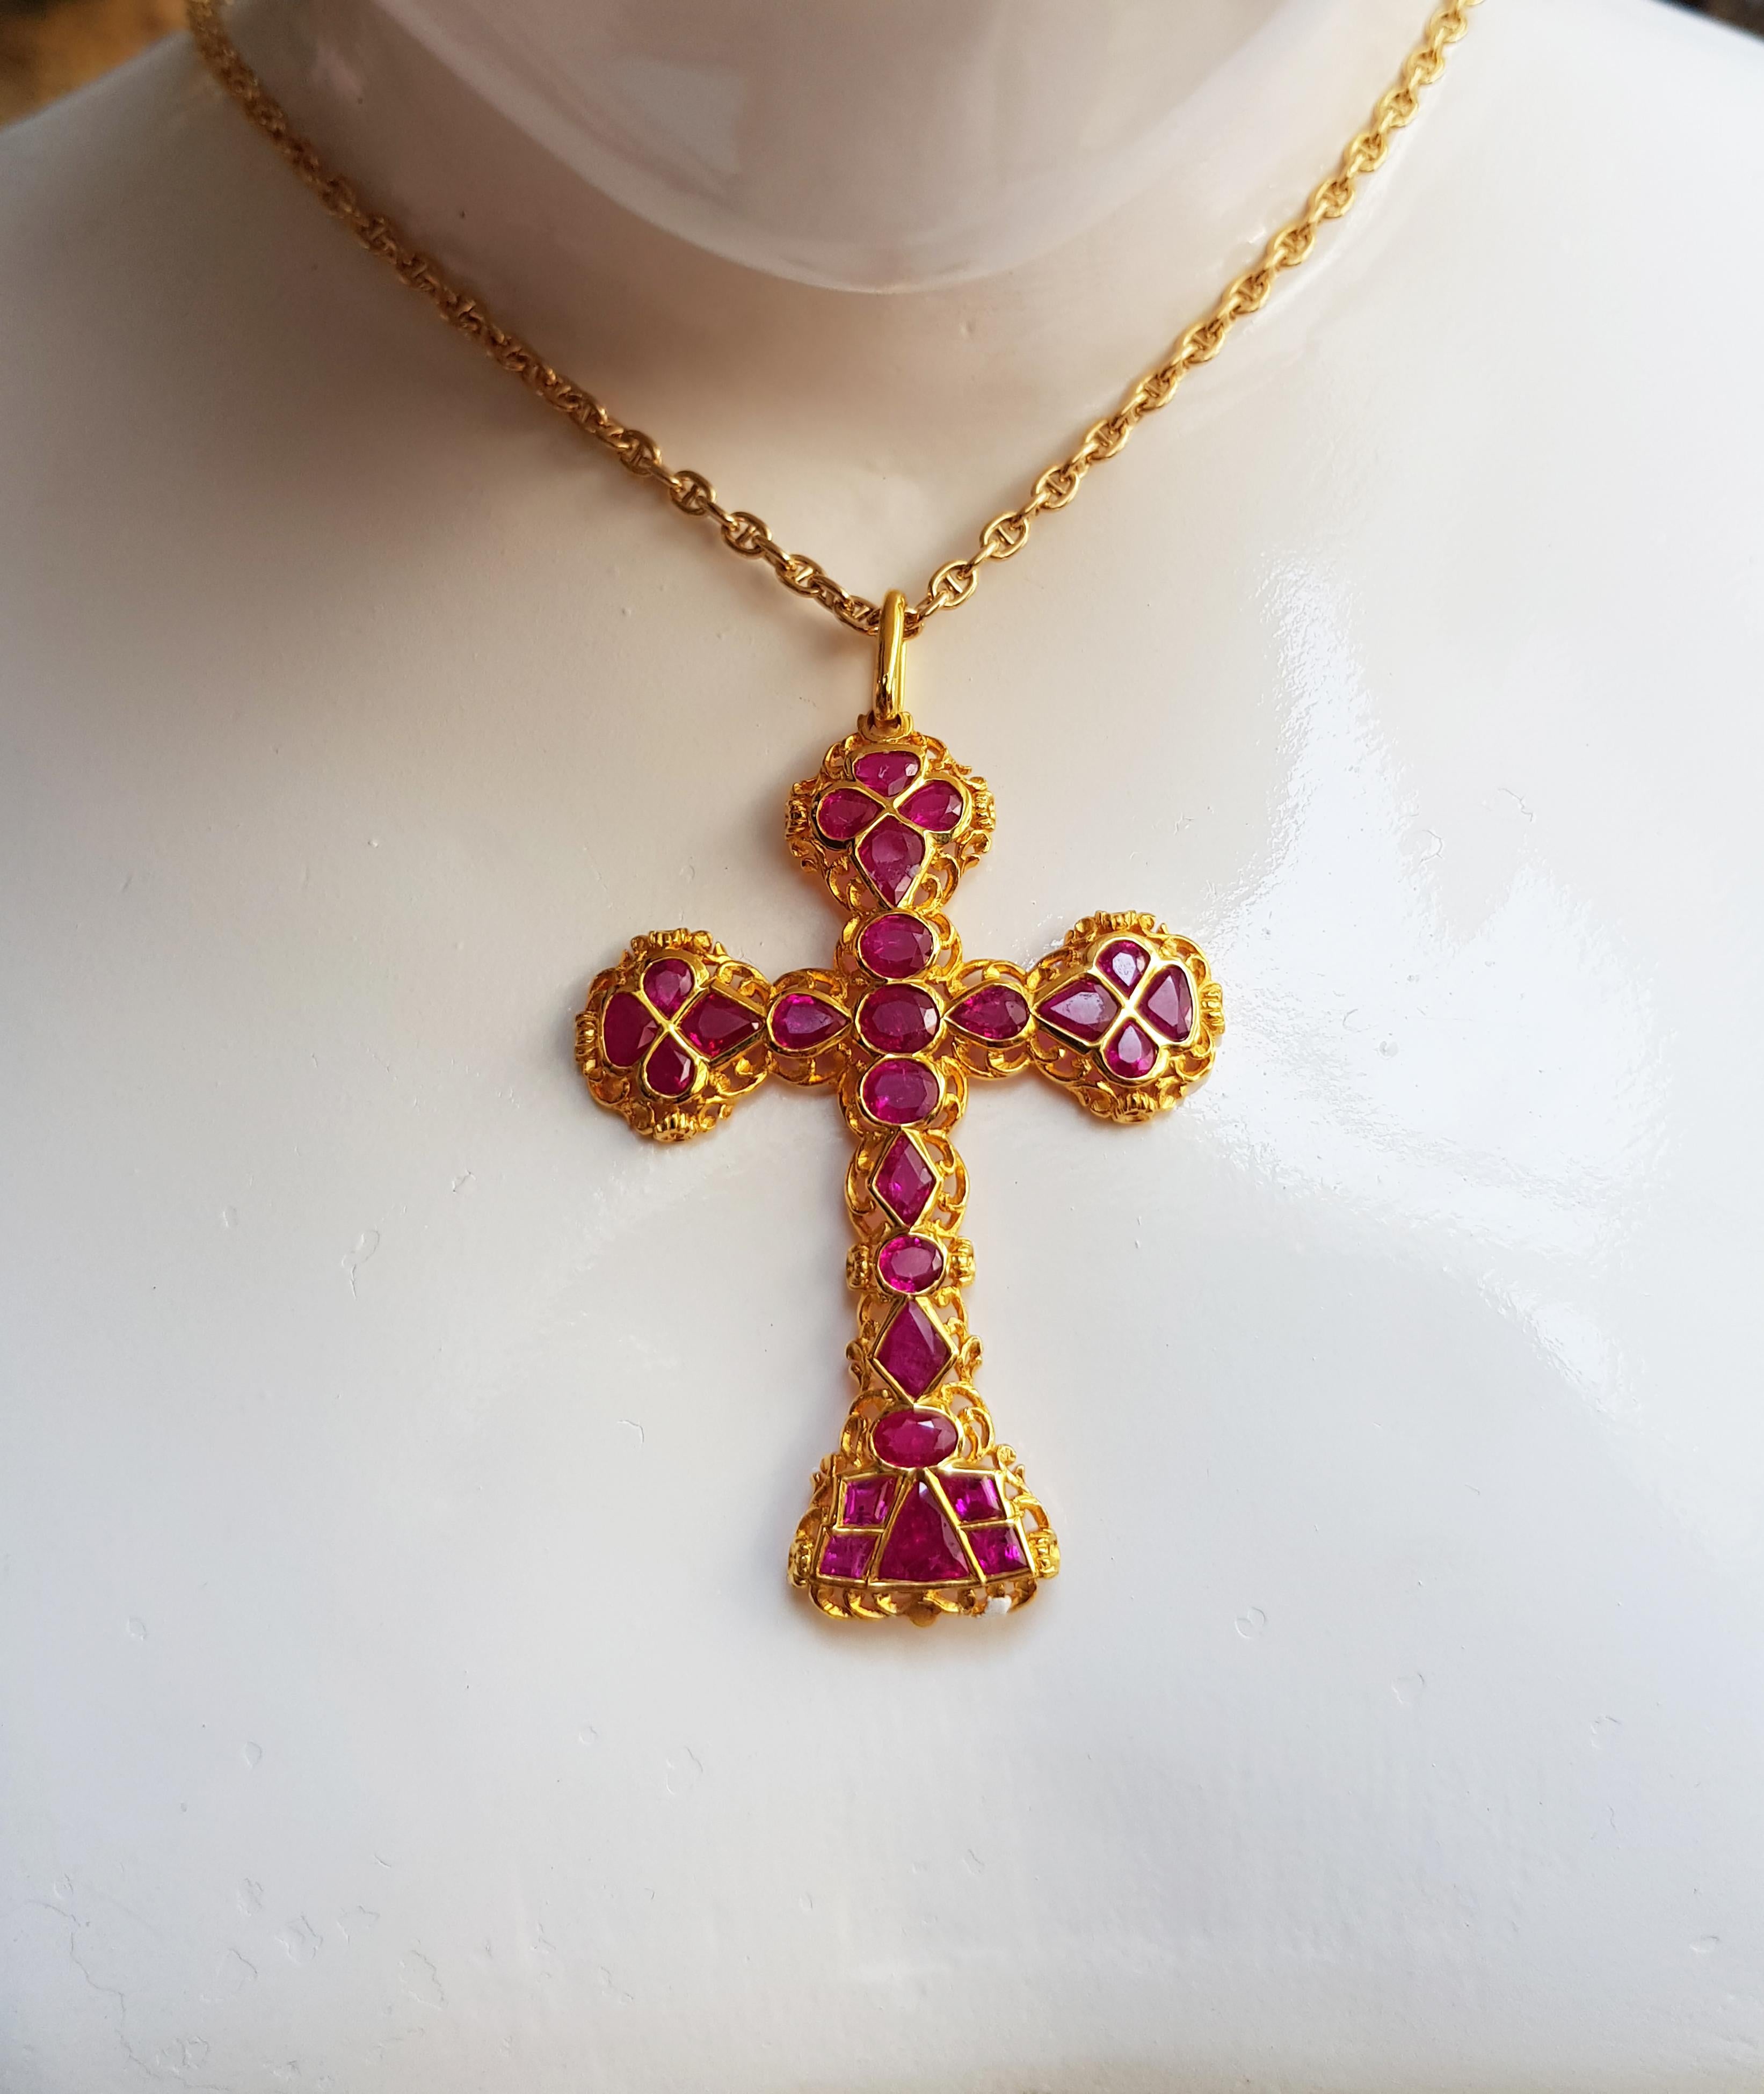 Pendentif Croix en rubis 13,50 carats serti dans de l'or 18 carats 
(chaîne non incluse)

Largeur : 5.1 cm
Longueur : 8.0 cm 

